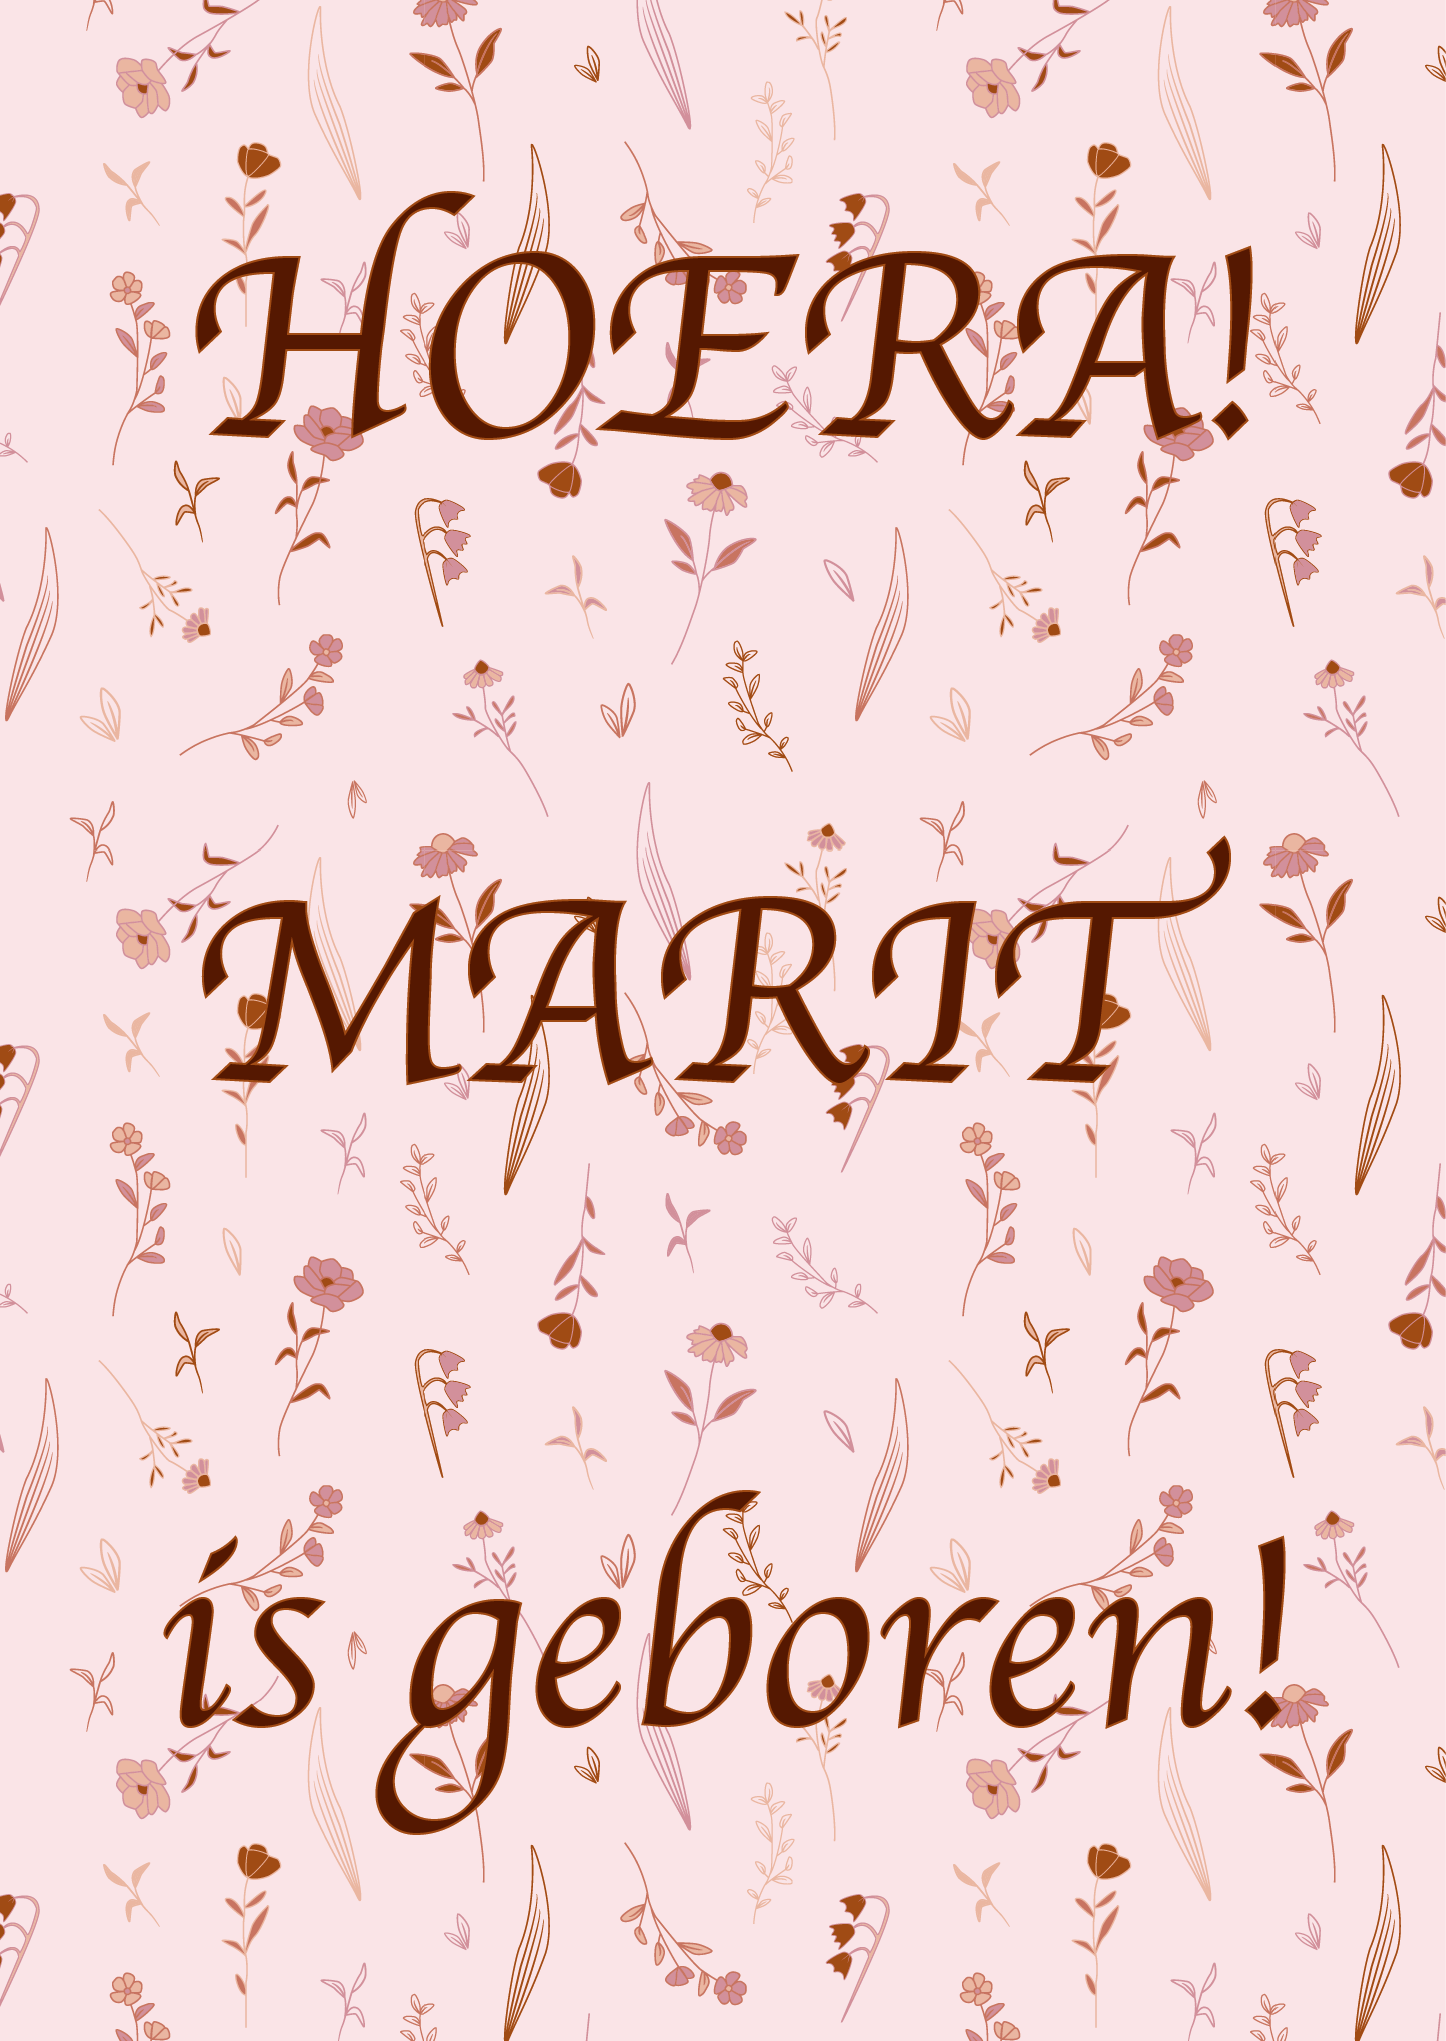 Voorbeeld geboortebord met bloemenprint, met roze en roestkleurige bloemenmix. Met tekst, hoera Marit is geboren!